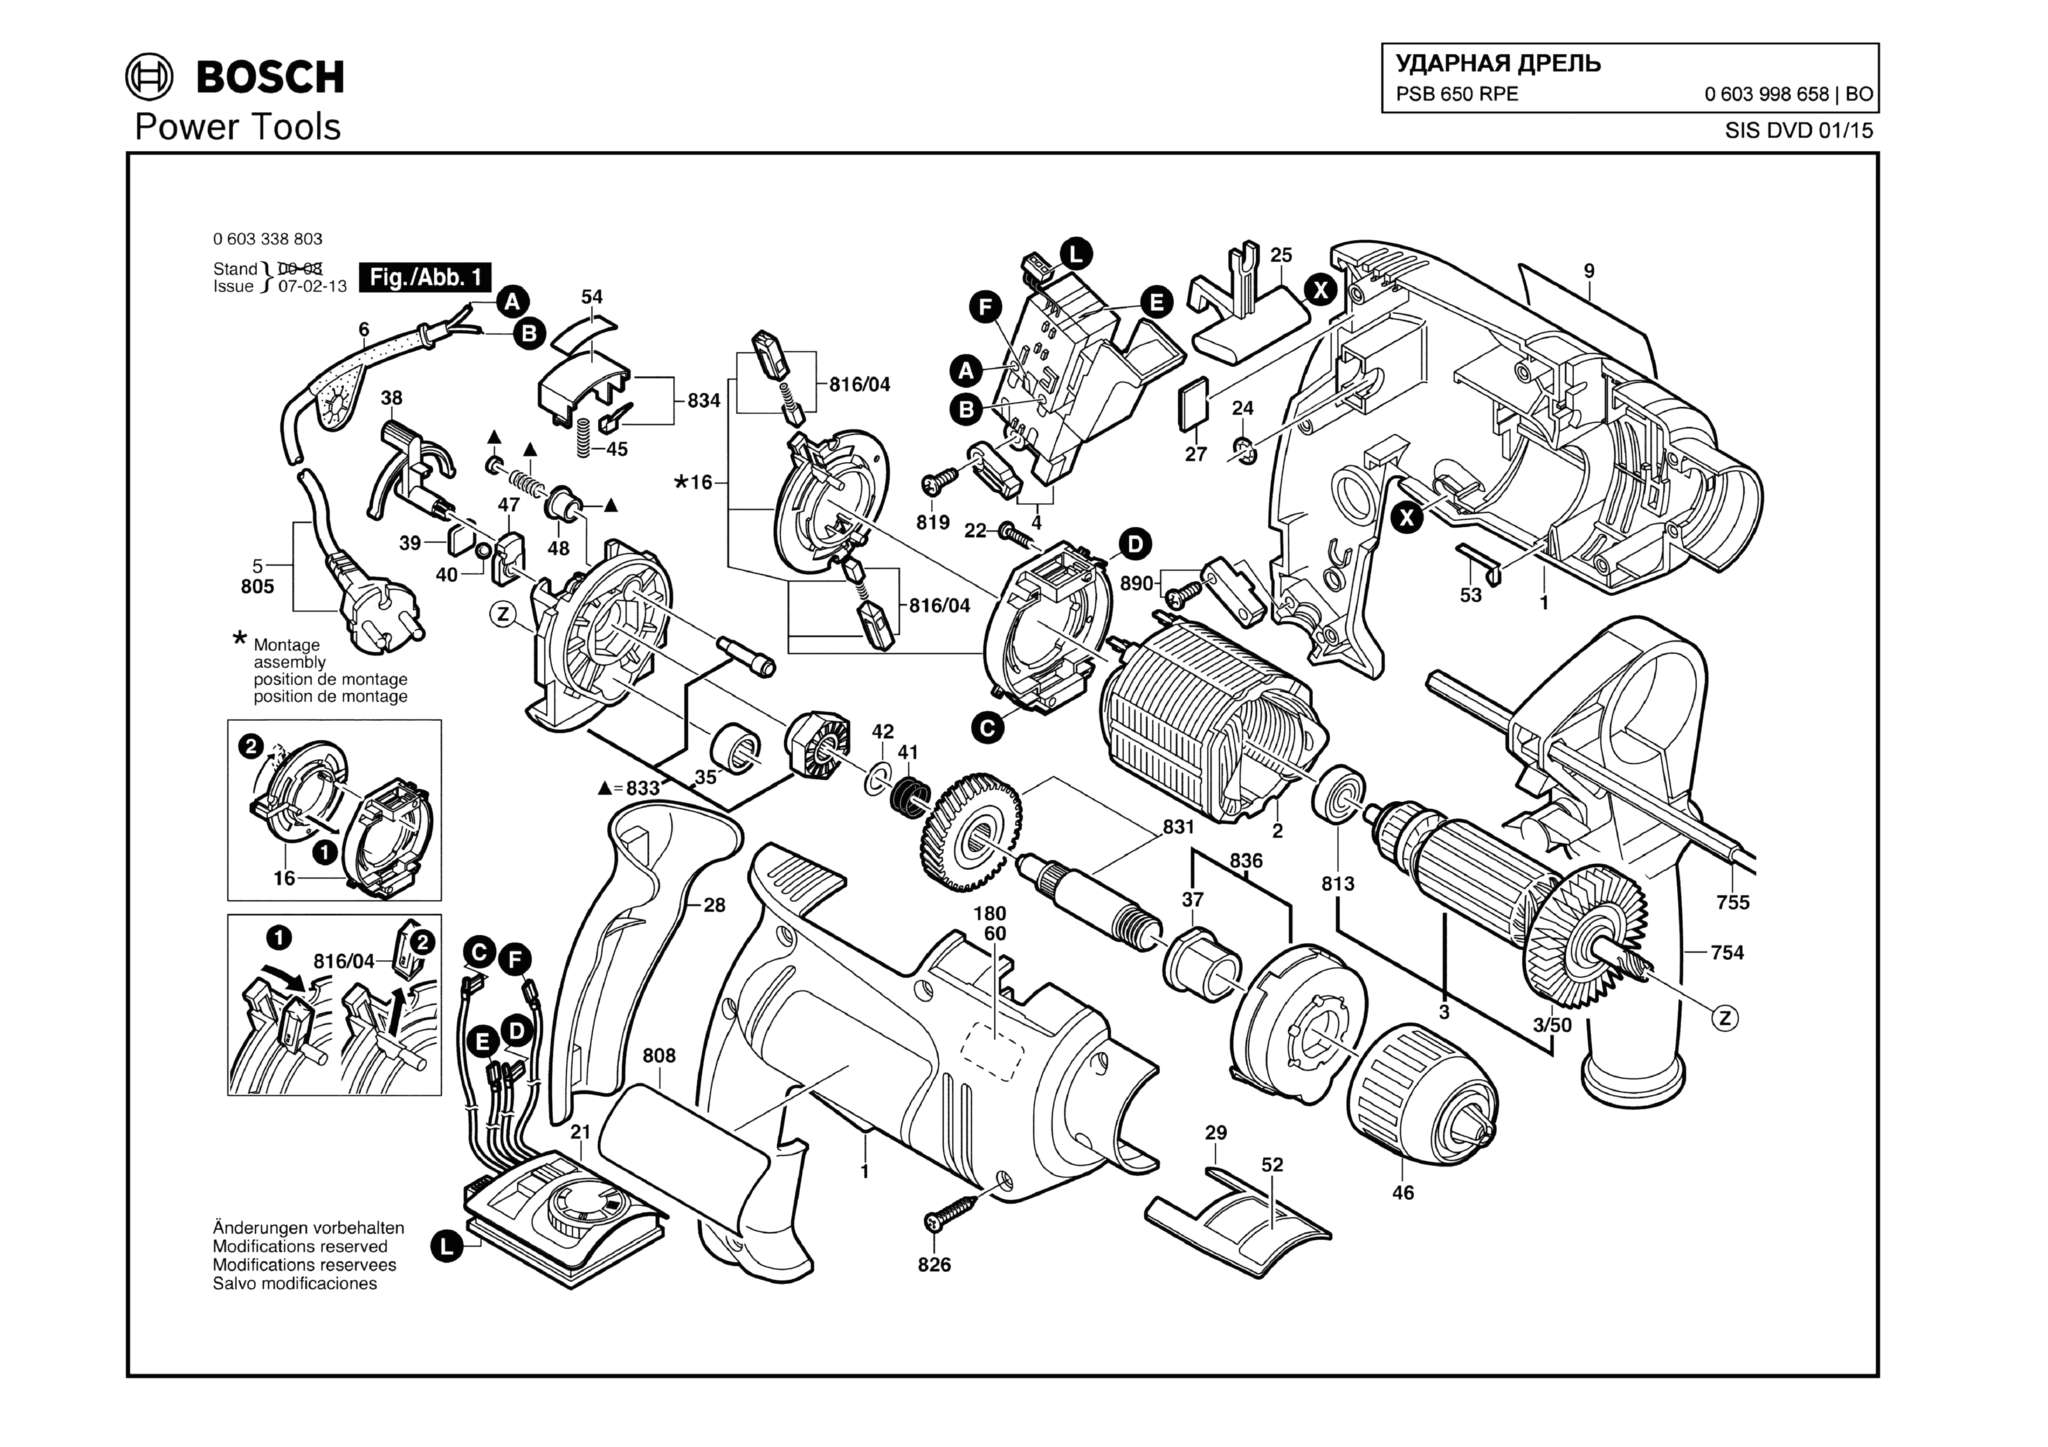 Запчасти, схема и деталировка Bosch PSB 650 RPE (ТИП 0603998658)